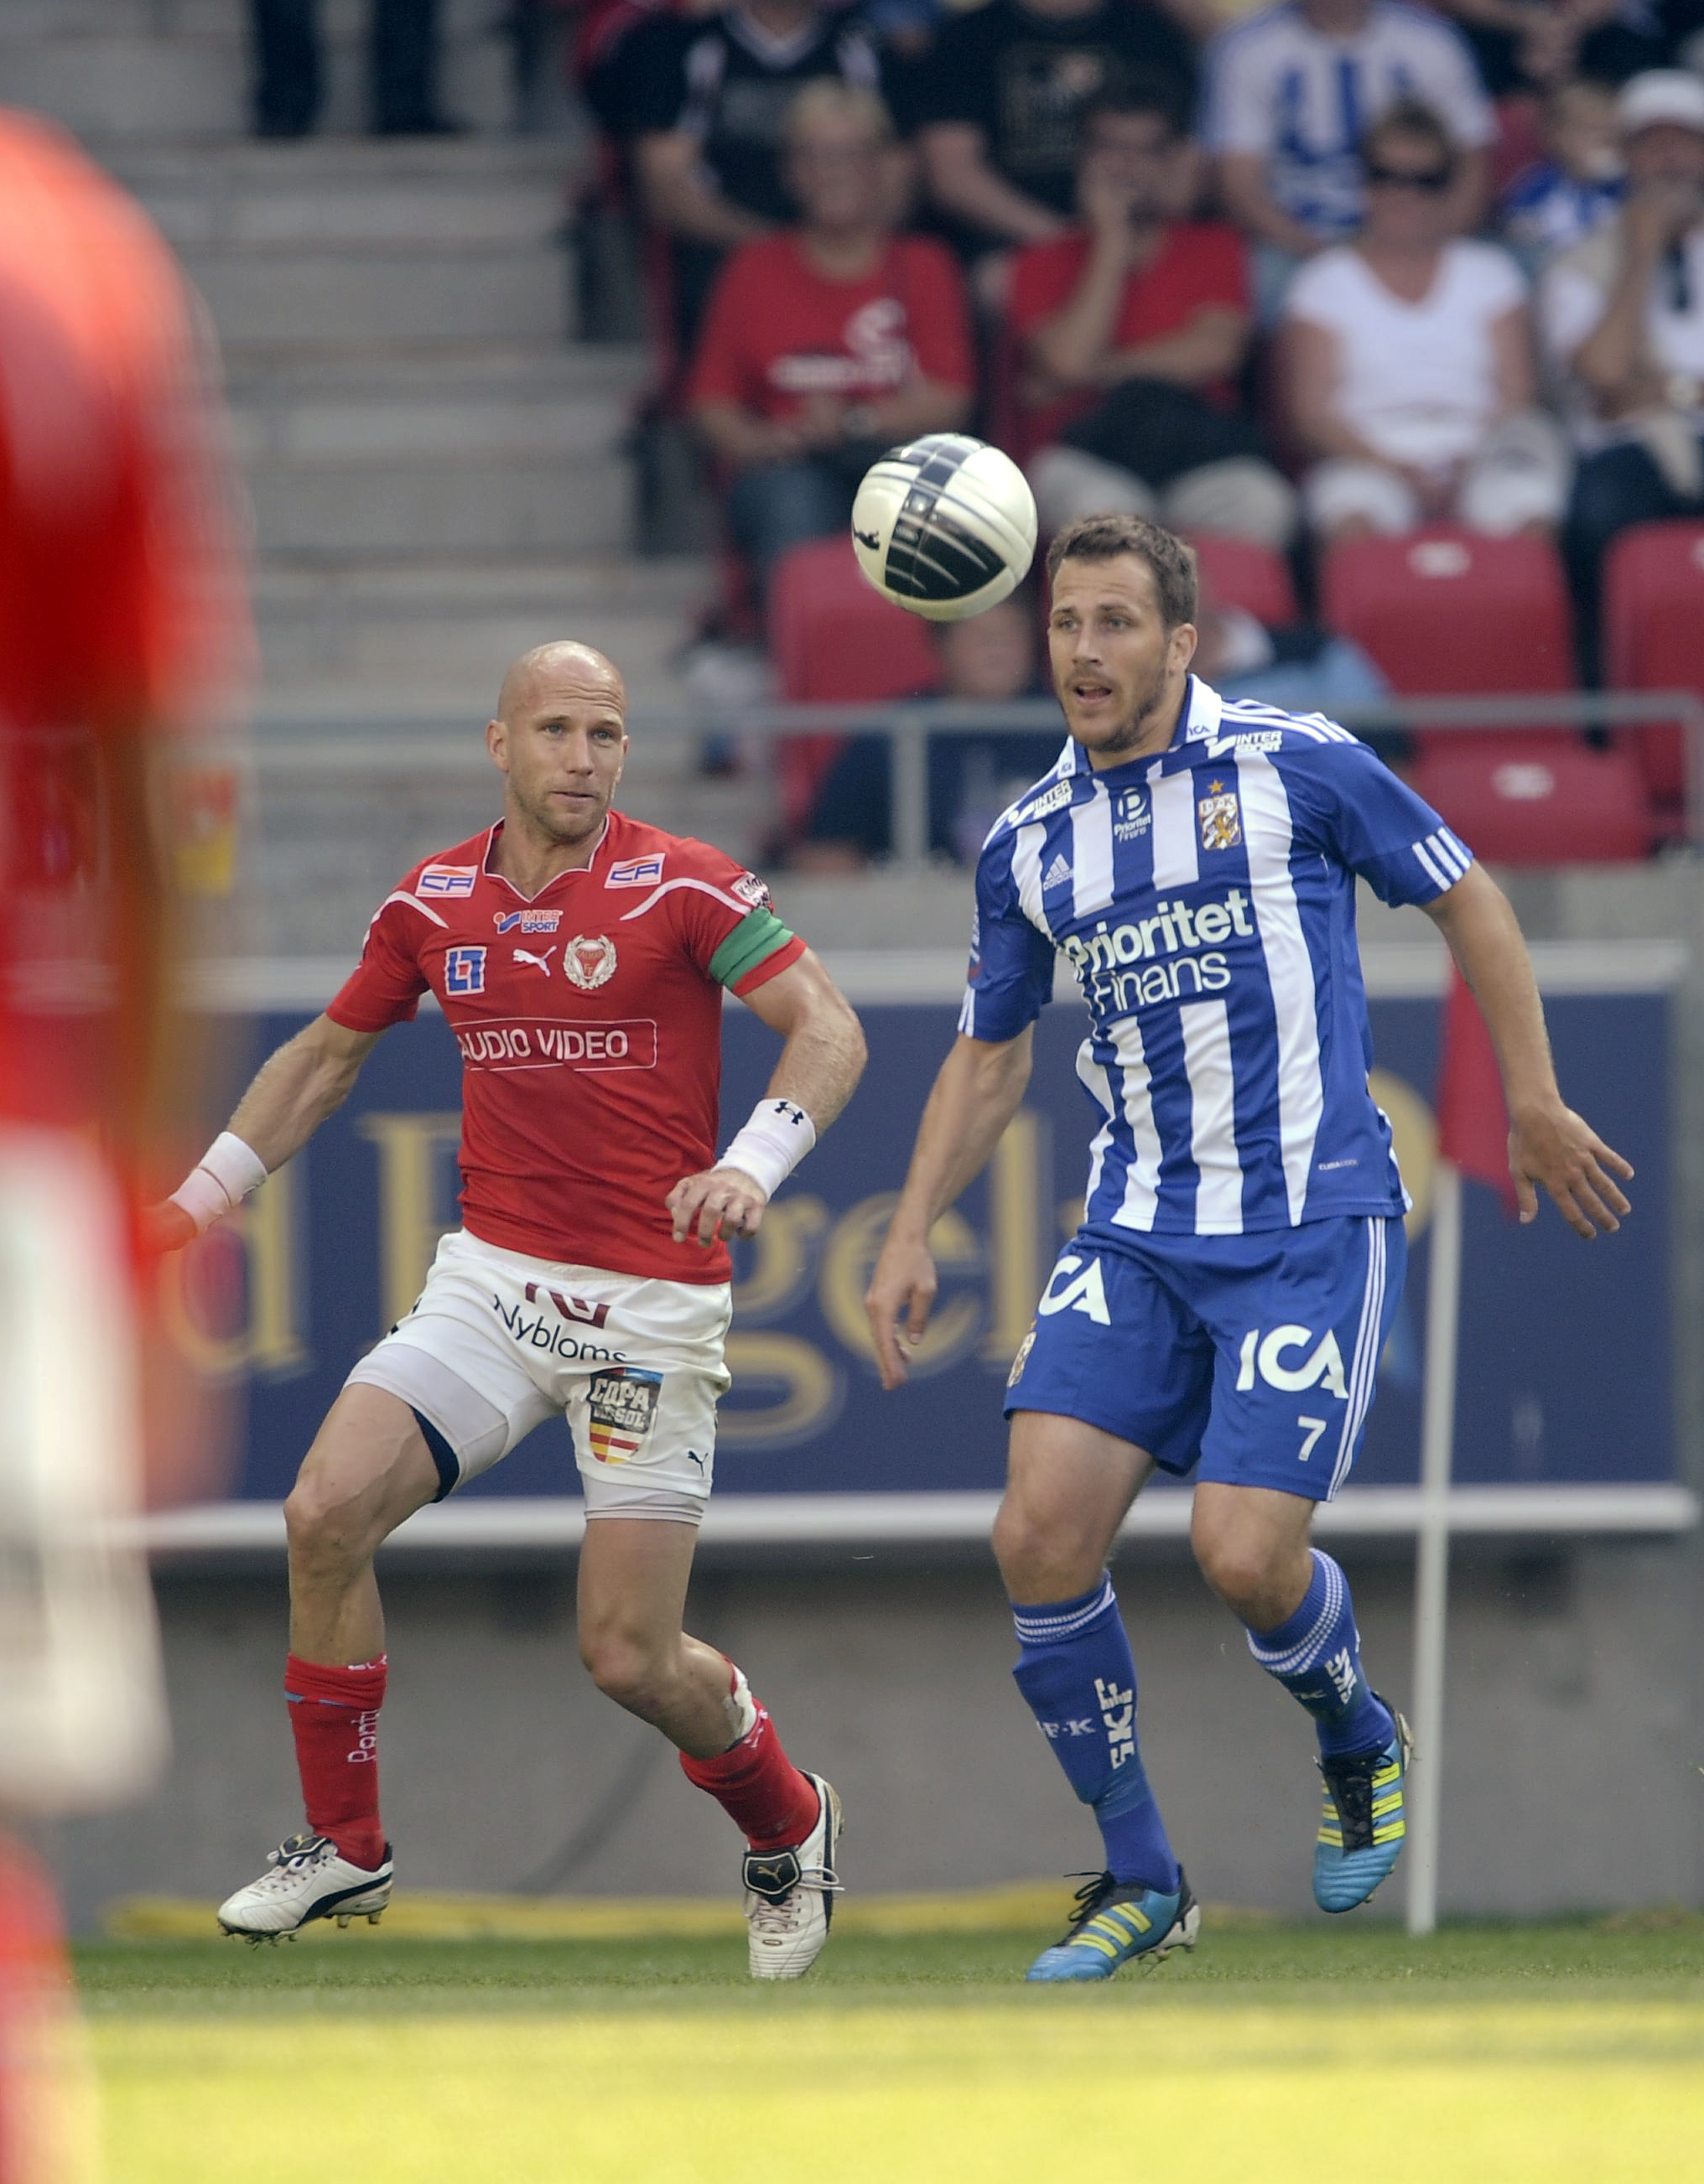 Ricardo Santos, Henrik Rydström, ifk goteborg, Kalmar FF, Nollade, Allsvenskan